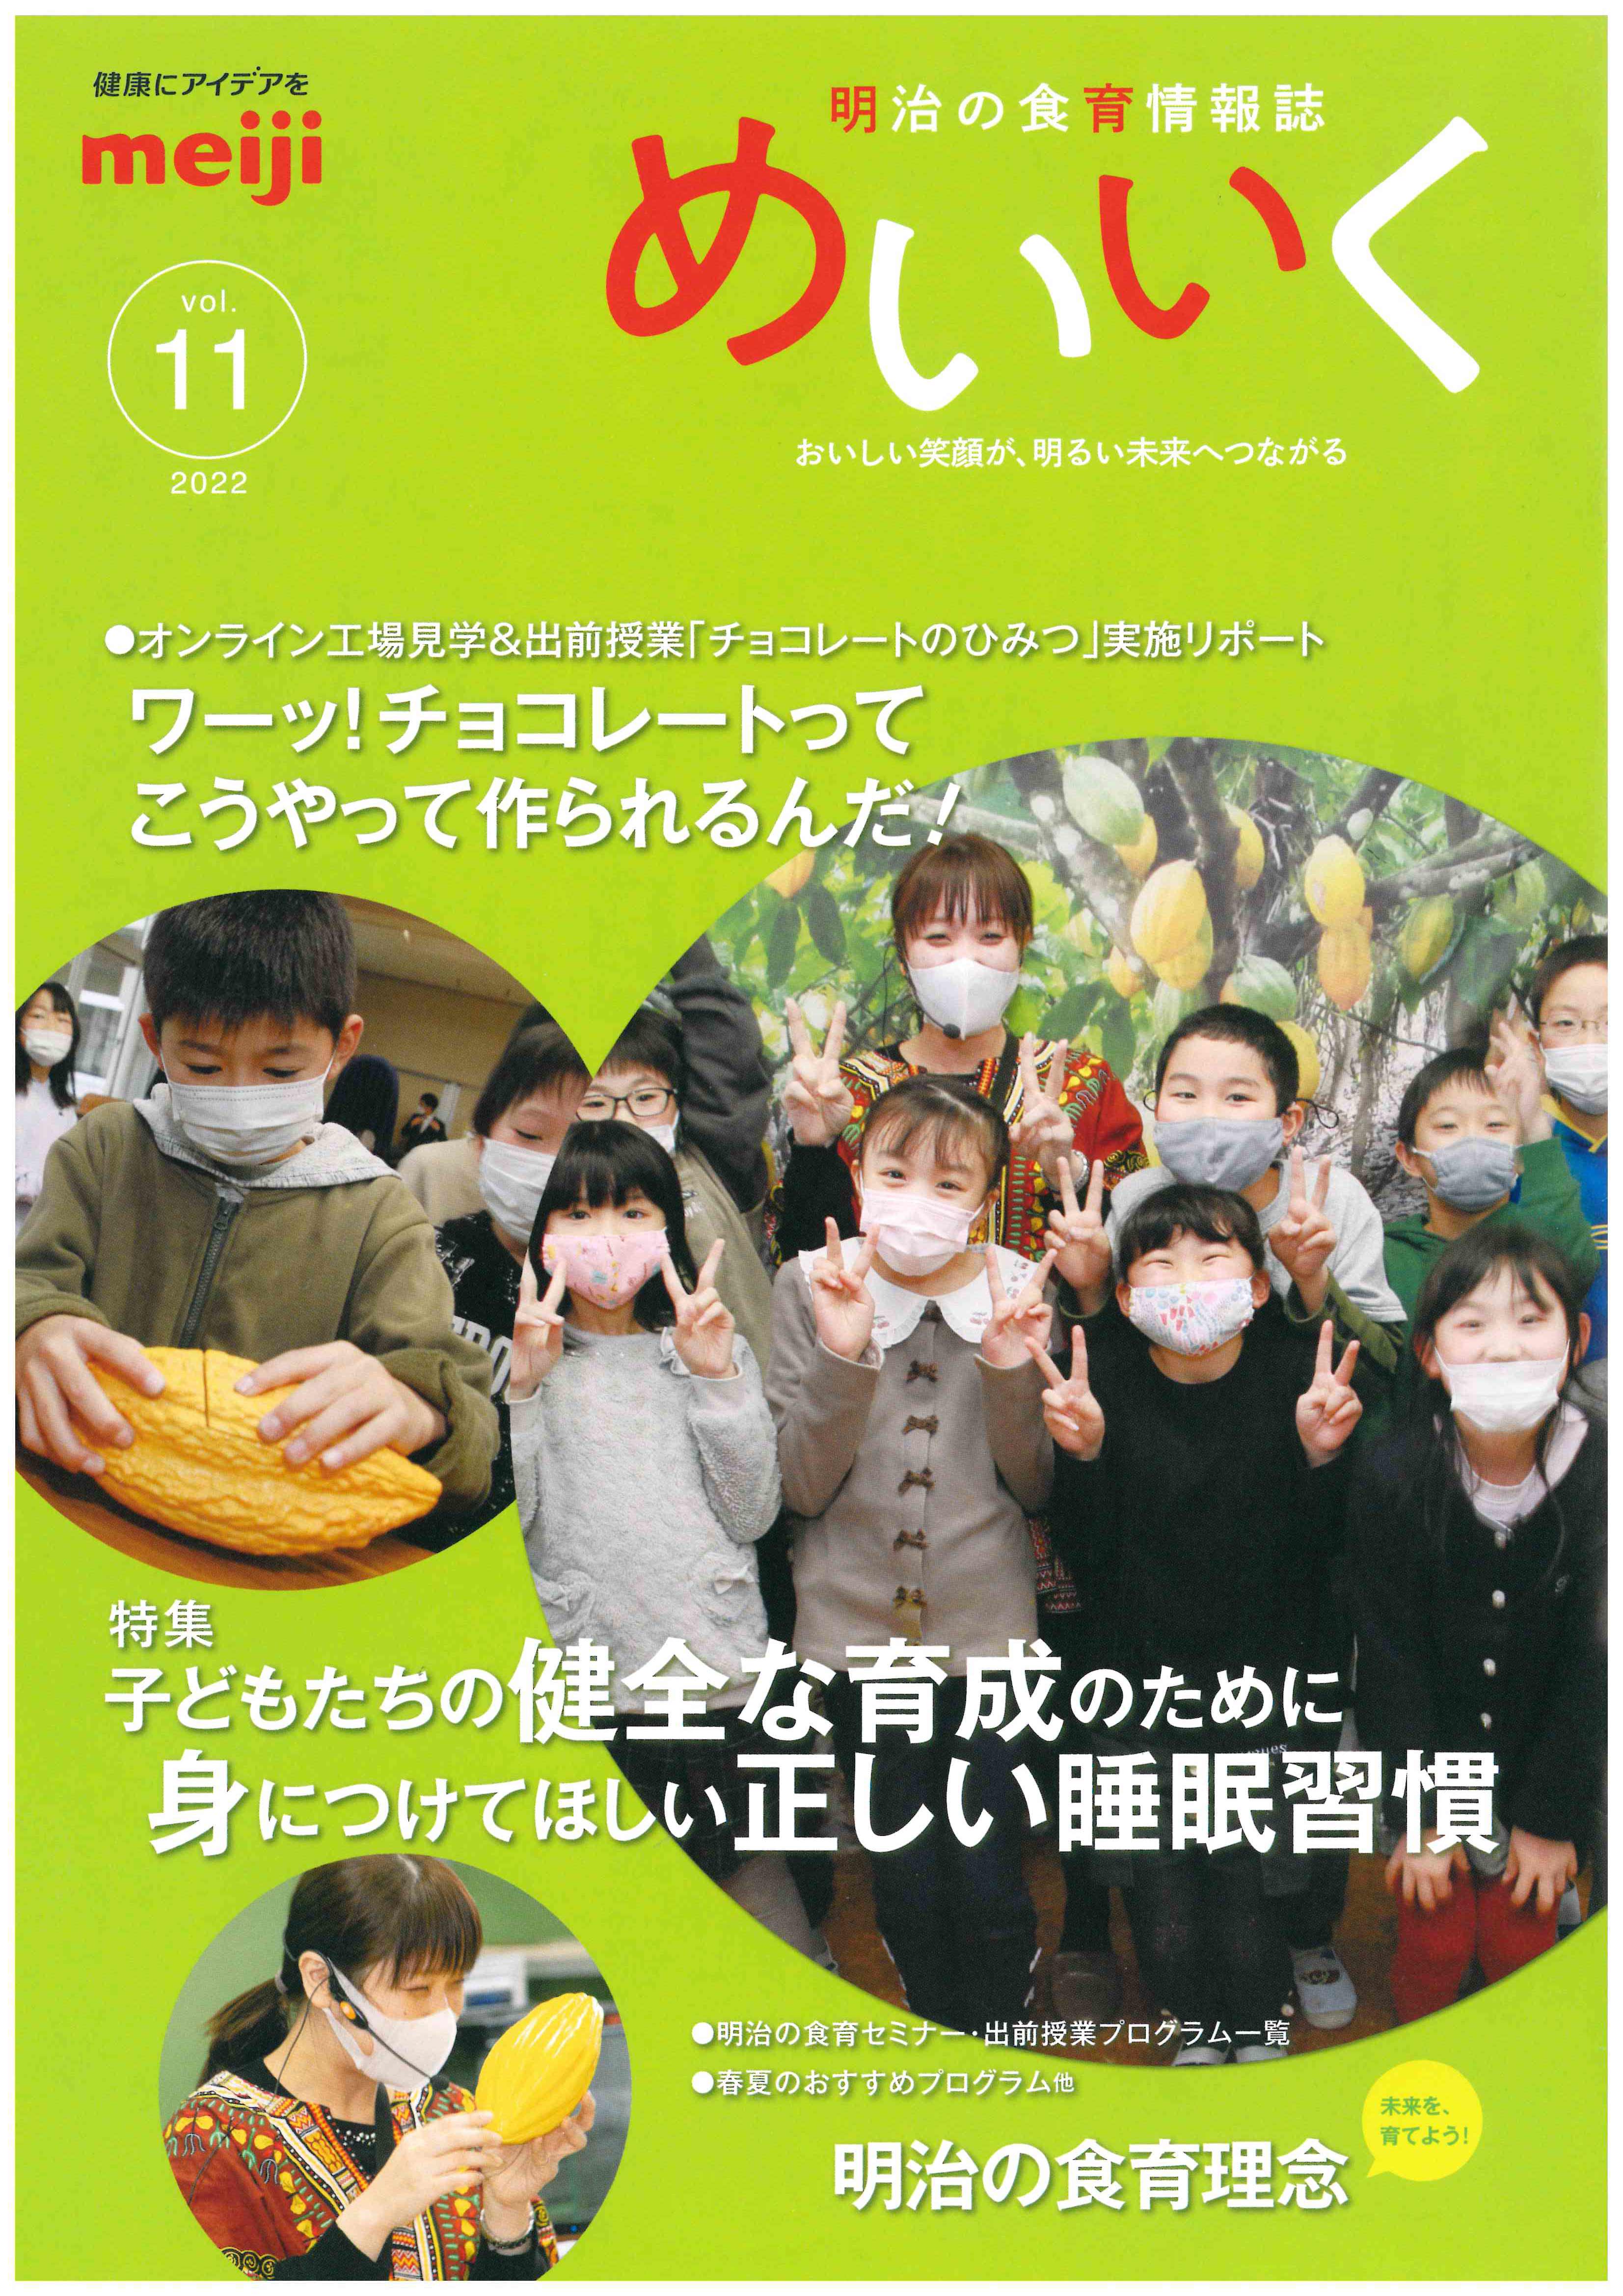 株式会社明治の食育情報誌「めいいく」に当院理事 大川匡子医師の記事が掲載されました